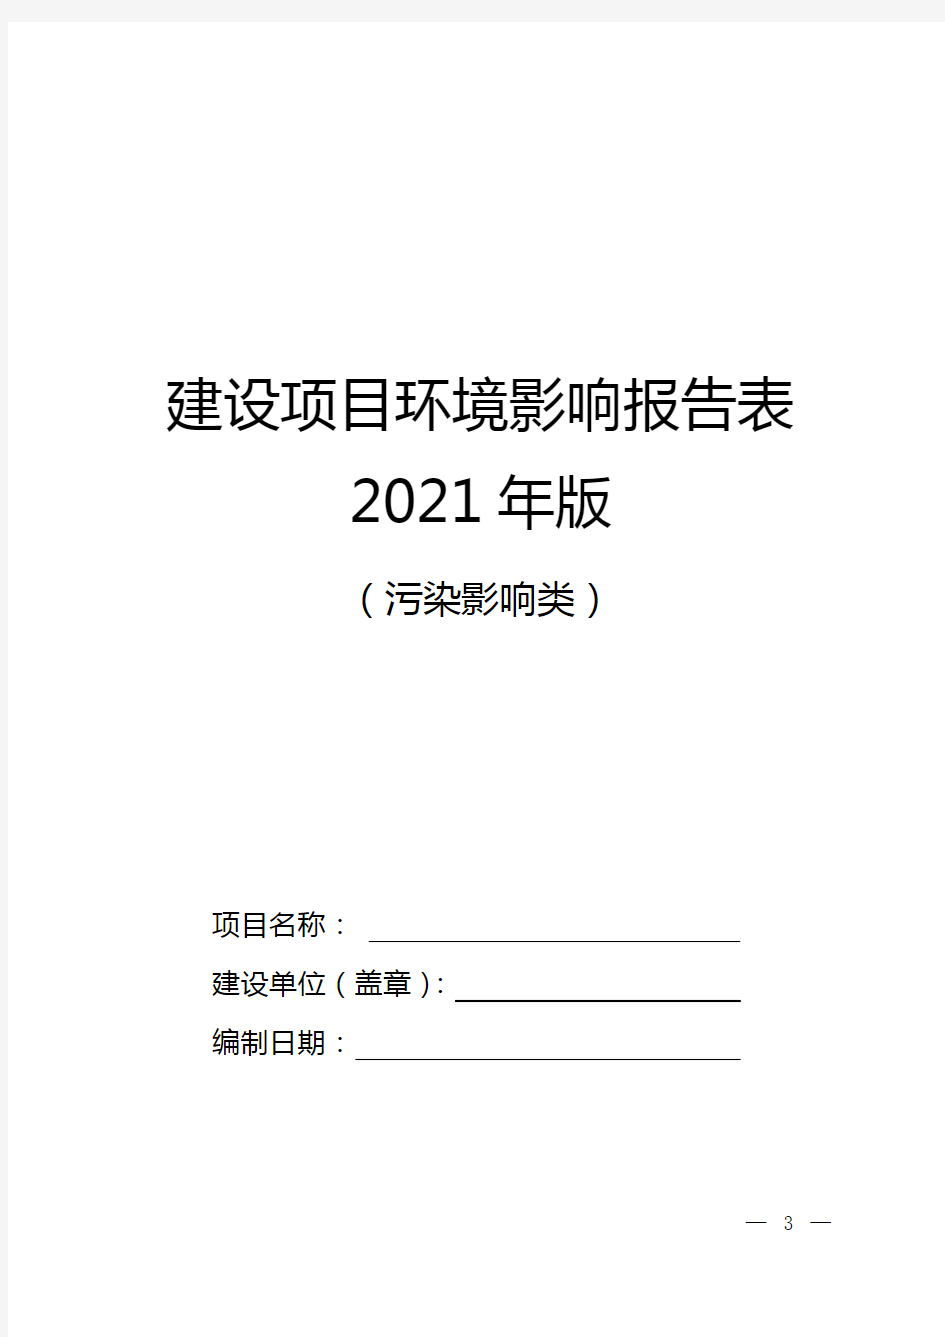 建设项目环境影响报告表2021年版(污染影响类)